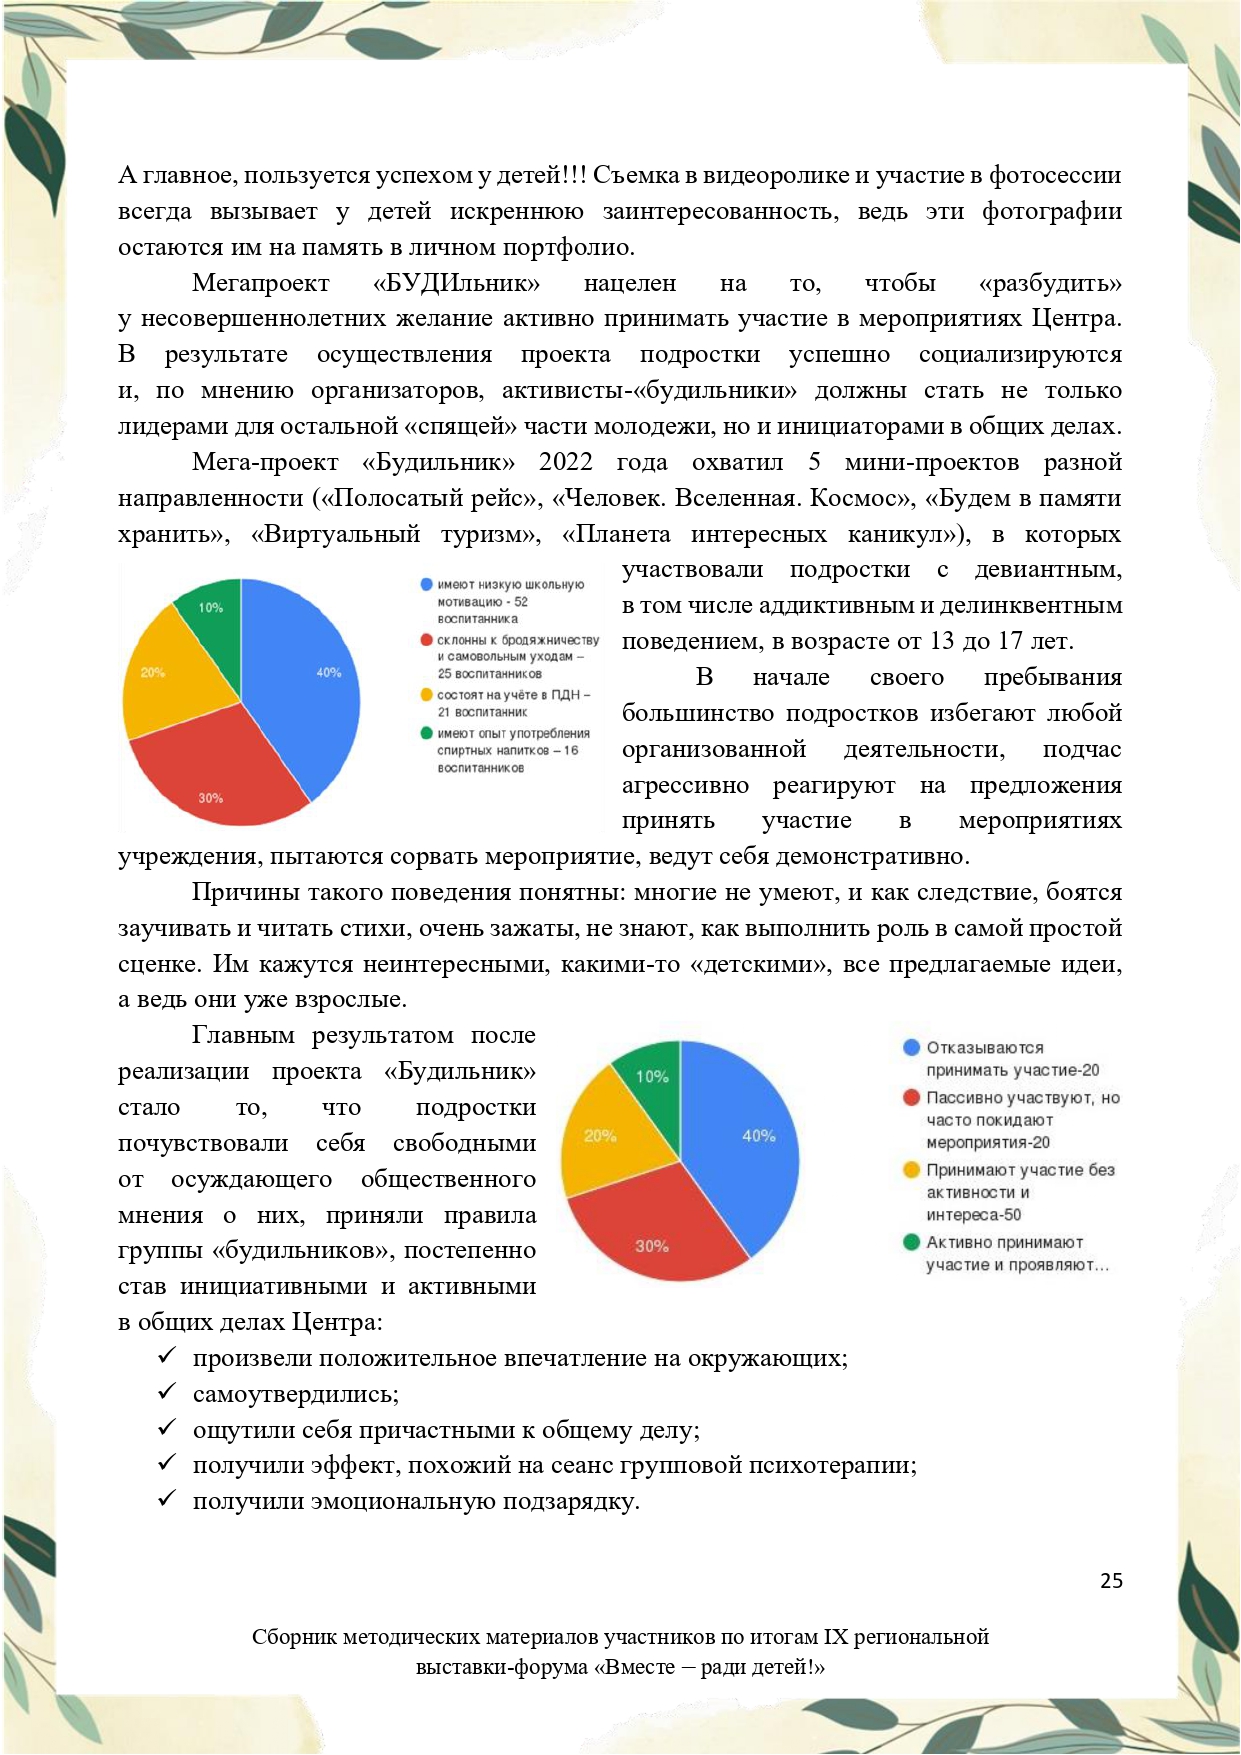 Sbornik_metodicheskikh_materialov_uchastnikov_IX_regionalnoy_vystavki-foruma_Vmeste__radi_detey_33__2023_page-0025